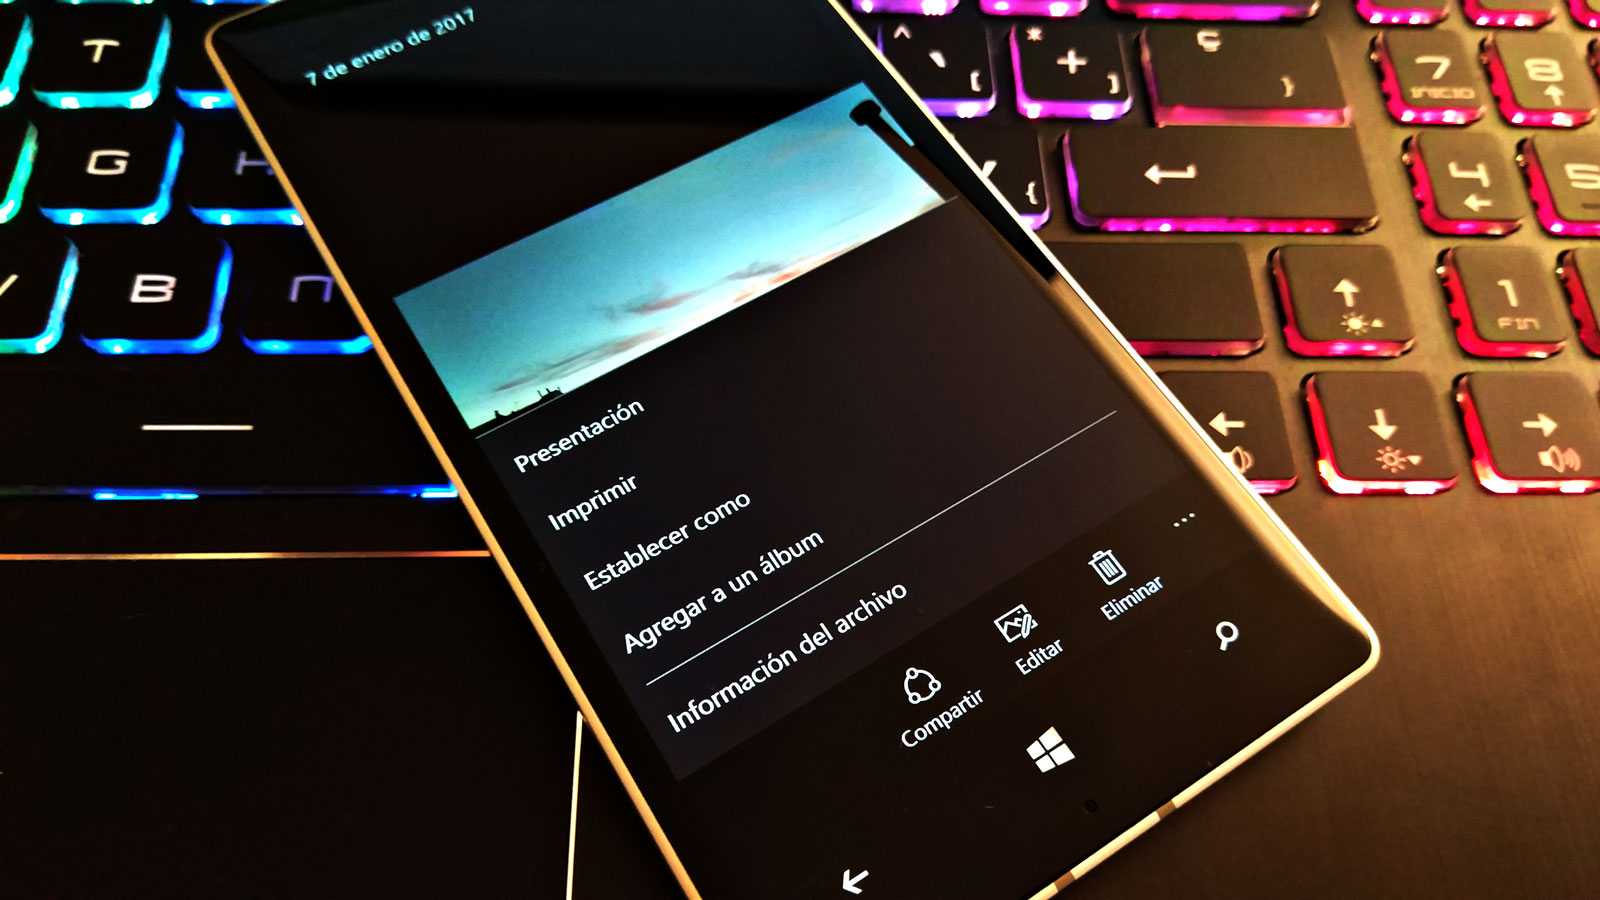 La opción de Imprimir regresa a la app de Fotos en Windows 10 Mobile